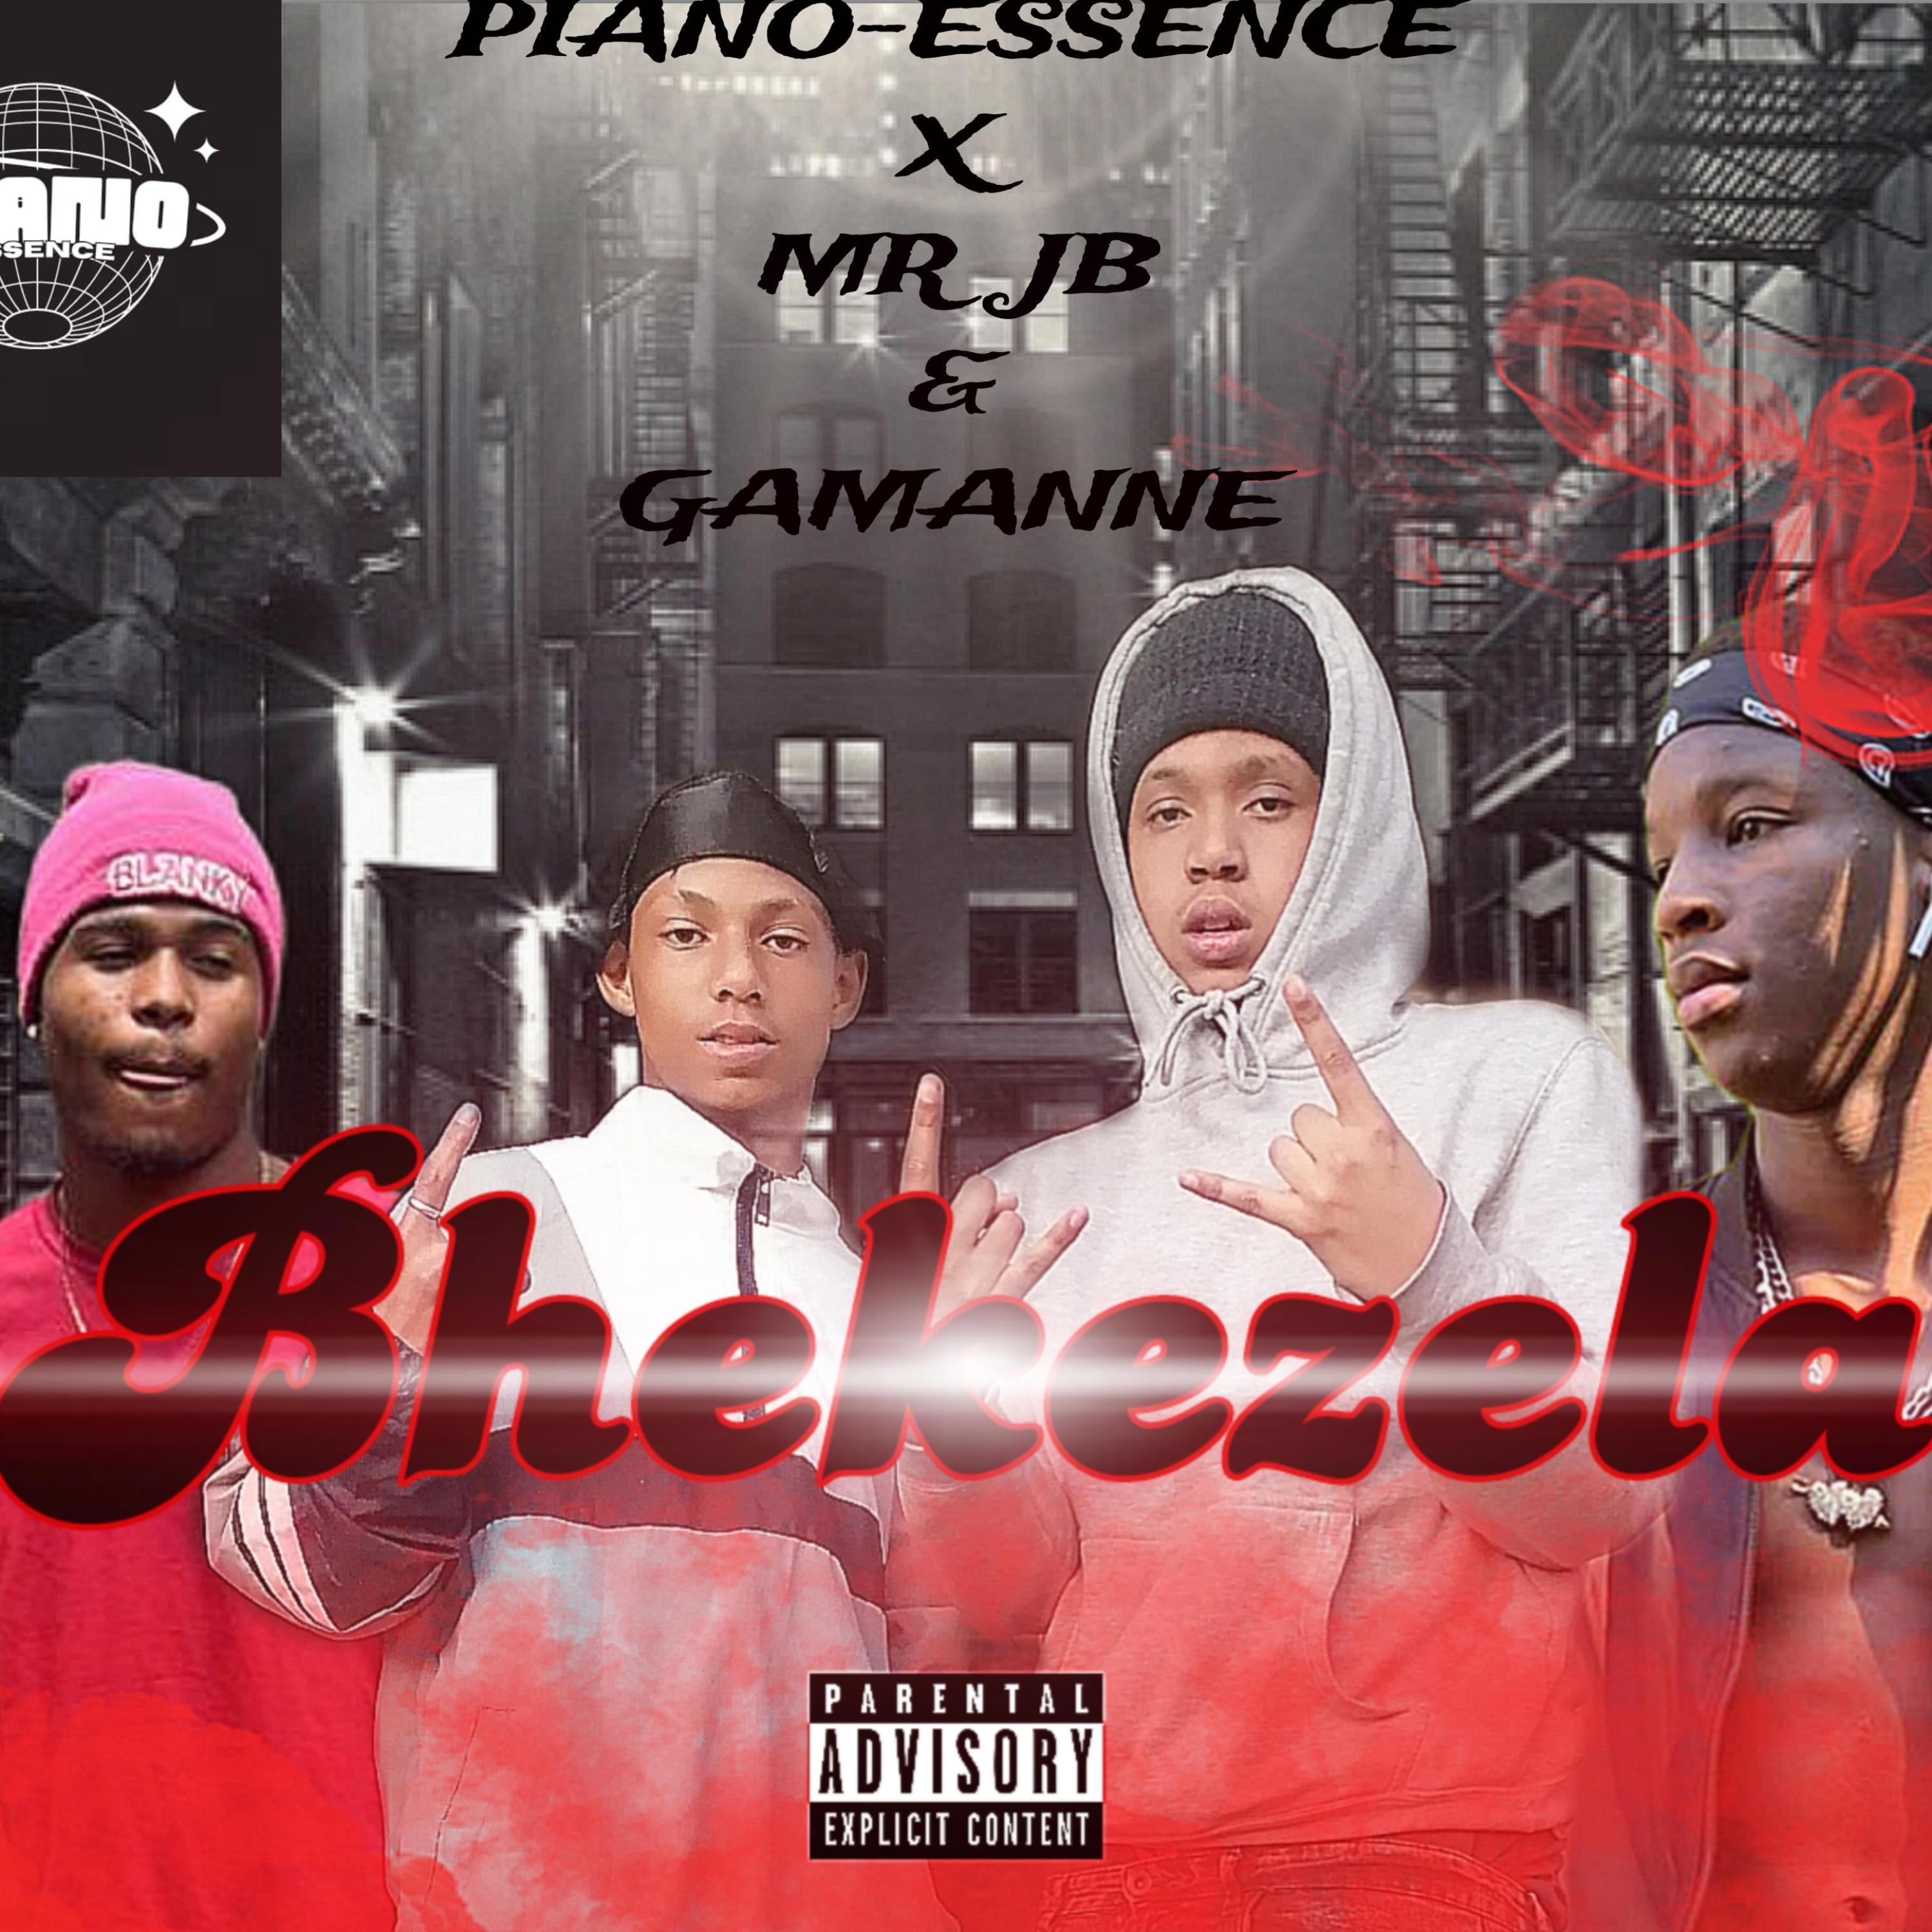 PIANO ESSENCE - Bhekezela (feat. Mr JB & Gagamanne)